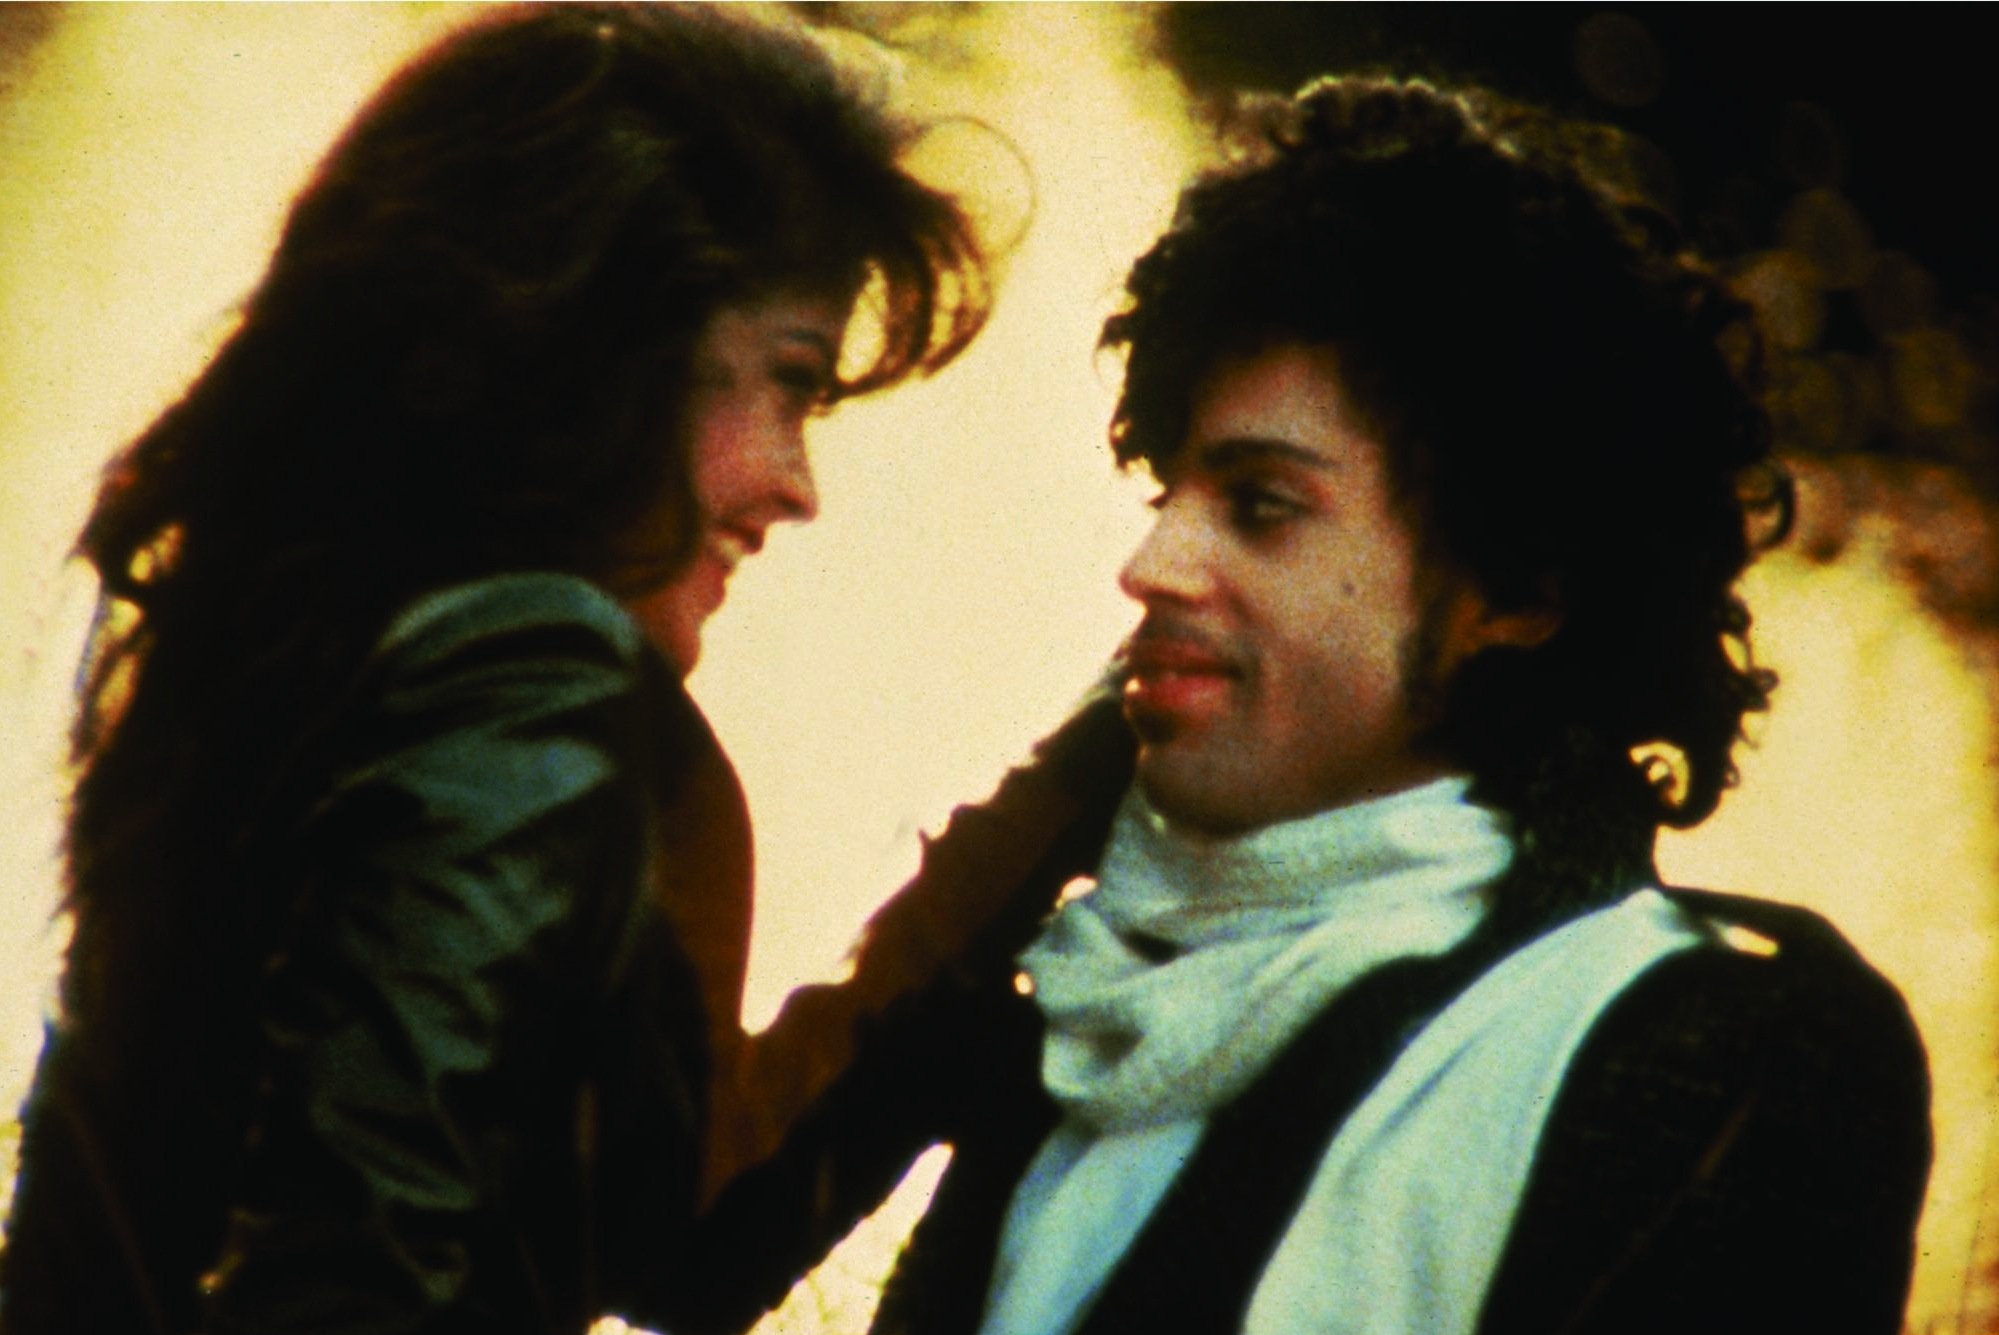 Still of Prince and Apollonia Kotero in Purple Rain (1984)